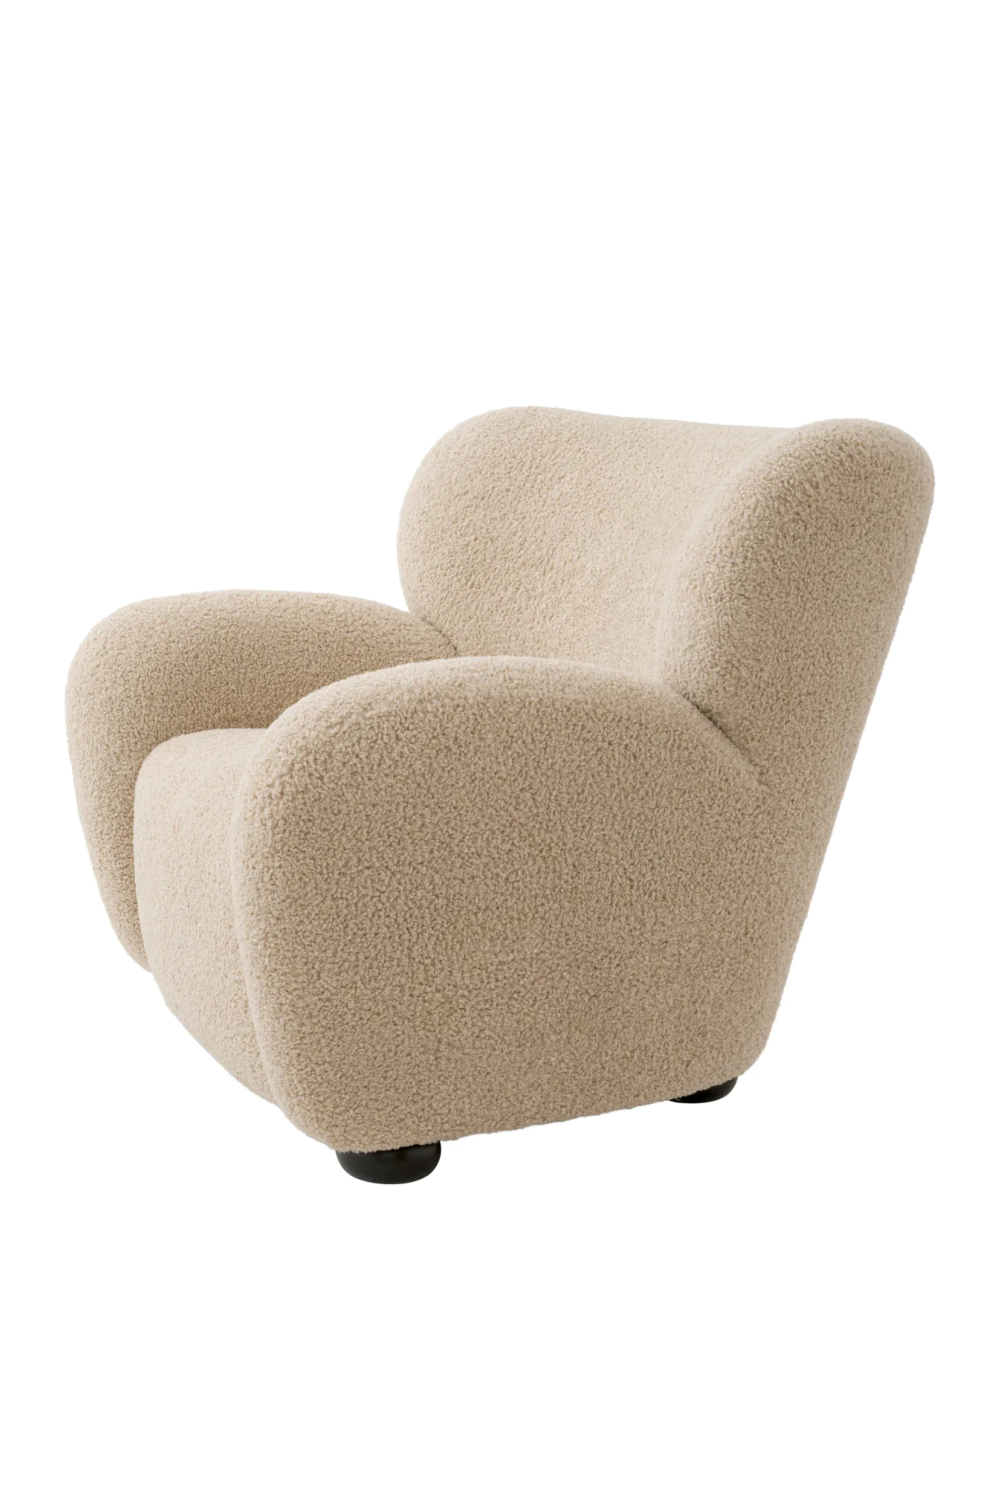 Beige Lounge Chair | Eichholtz Thames | Oroa.com